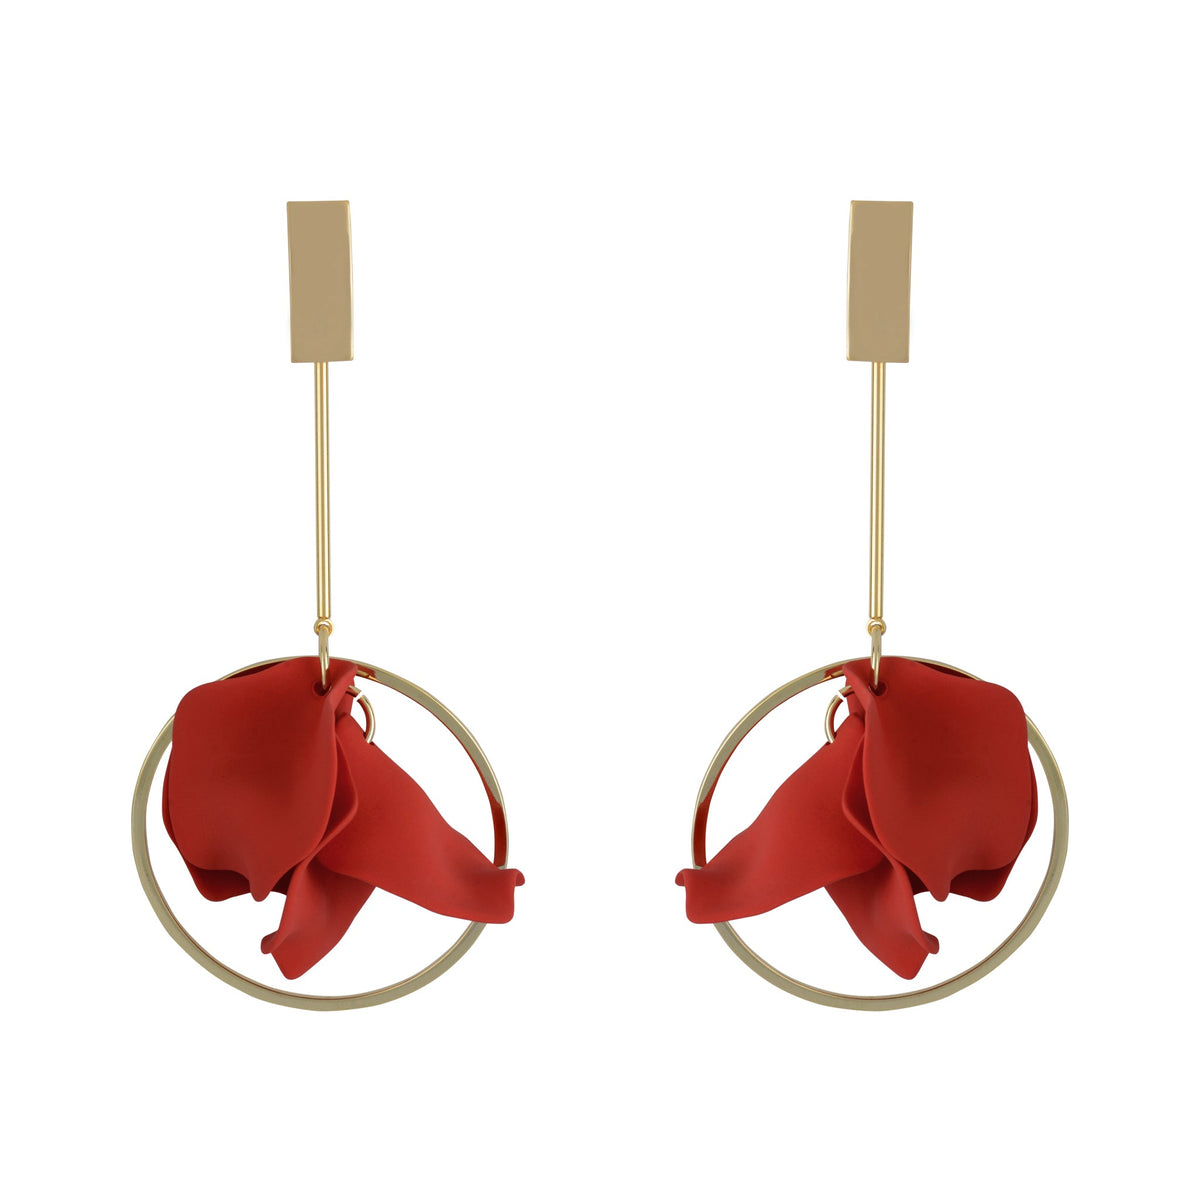 Suspended Pendulum Petal Earrings - Scarlet